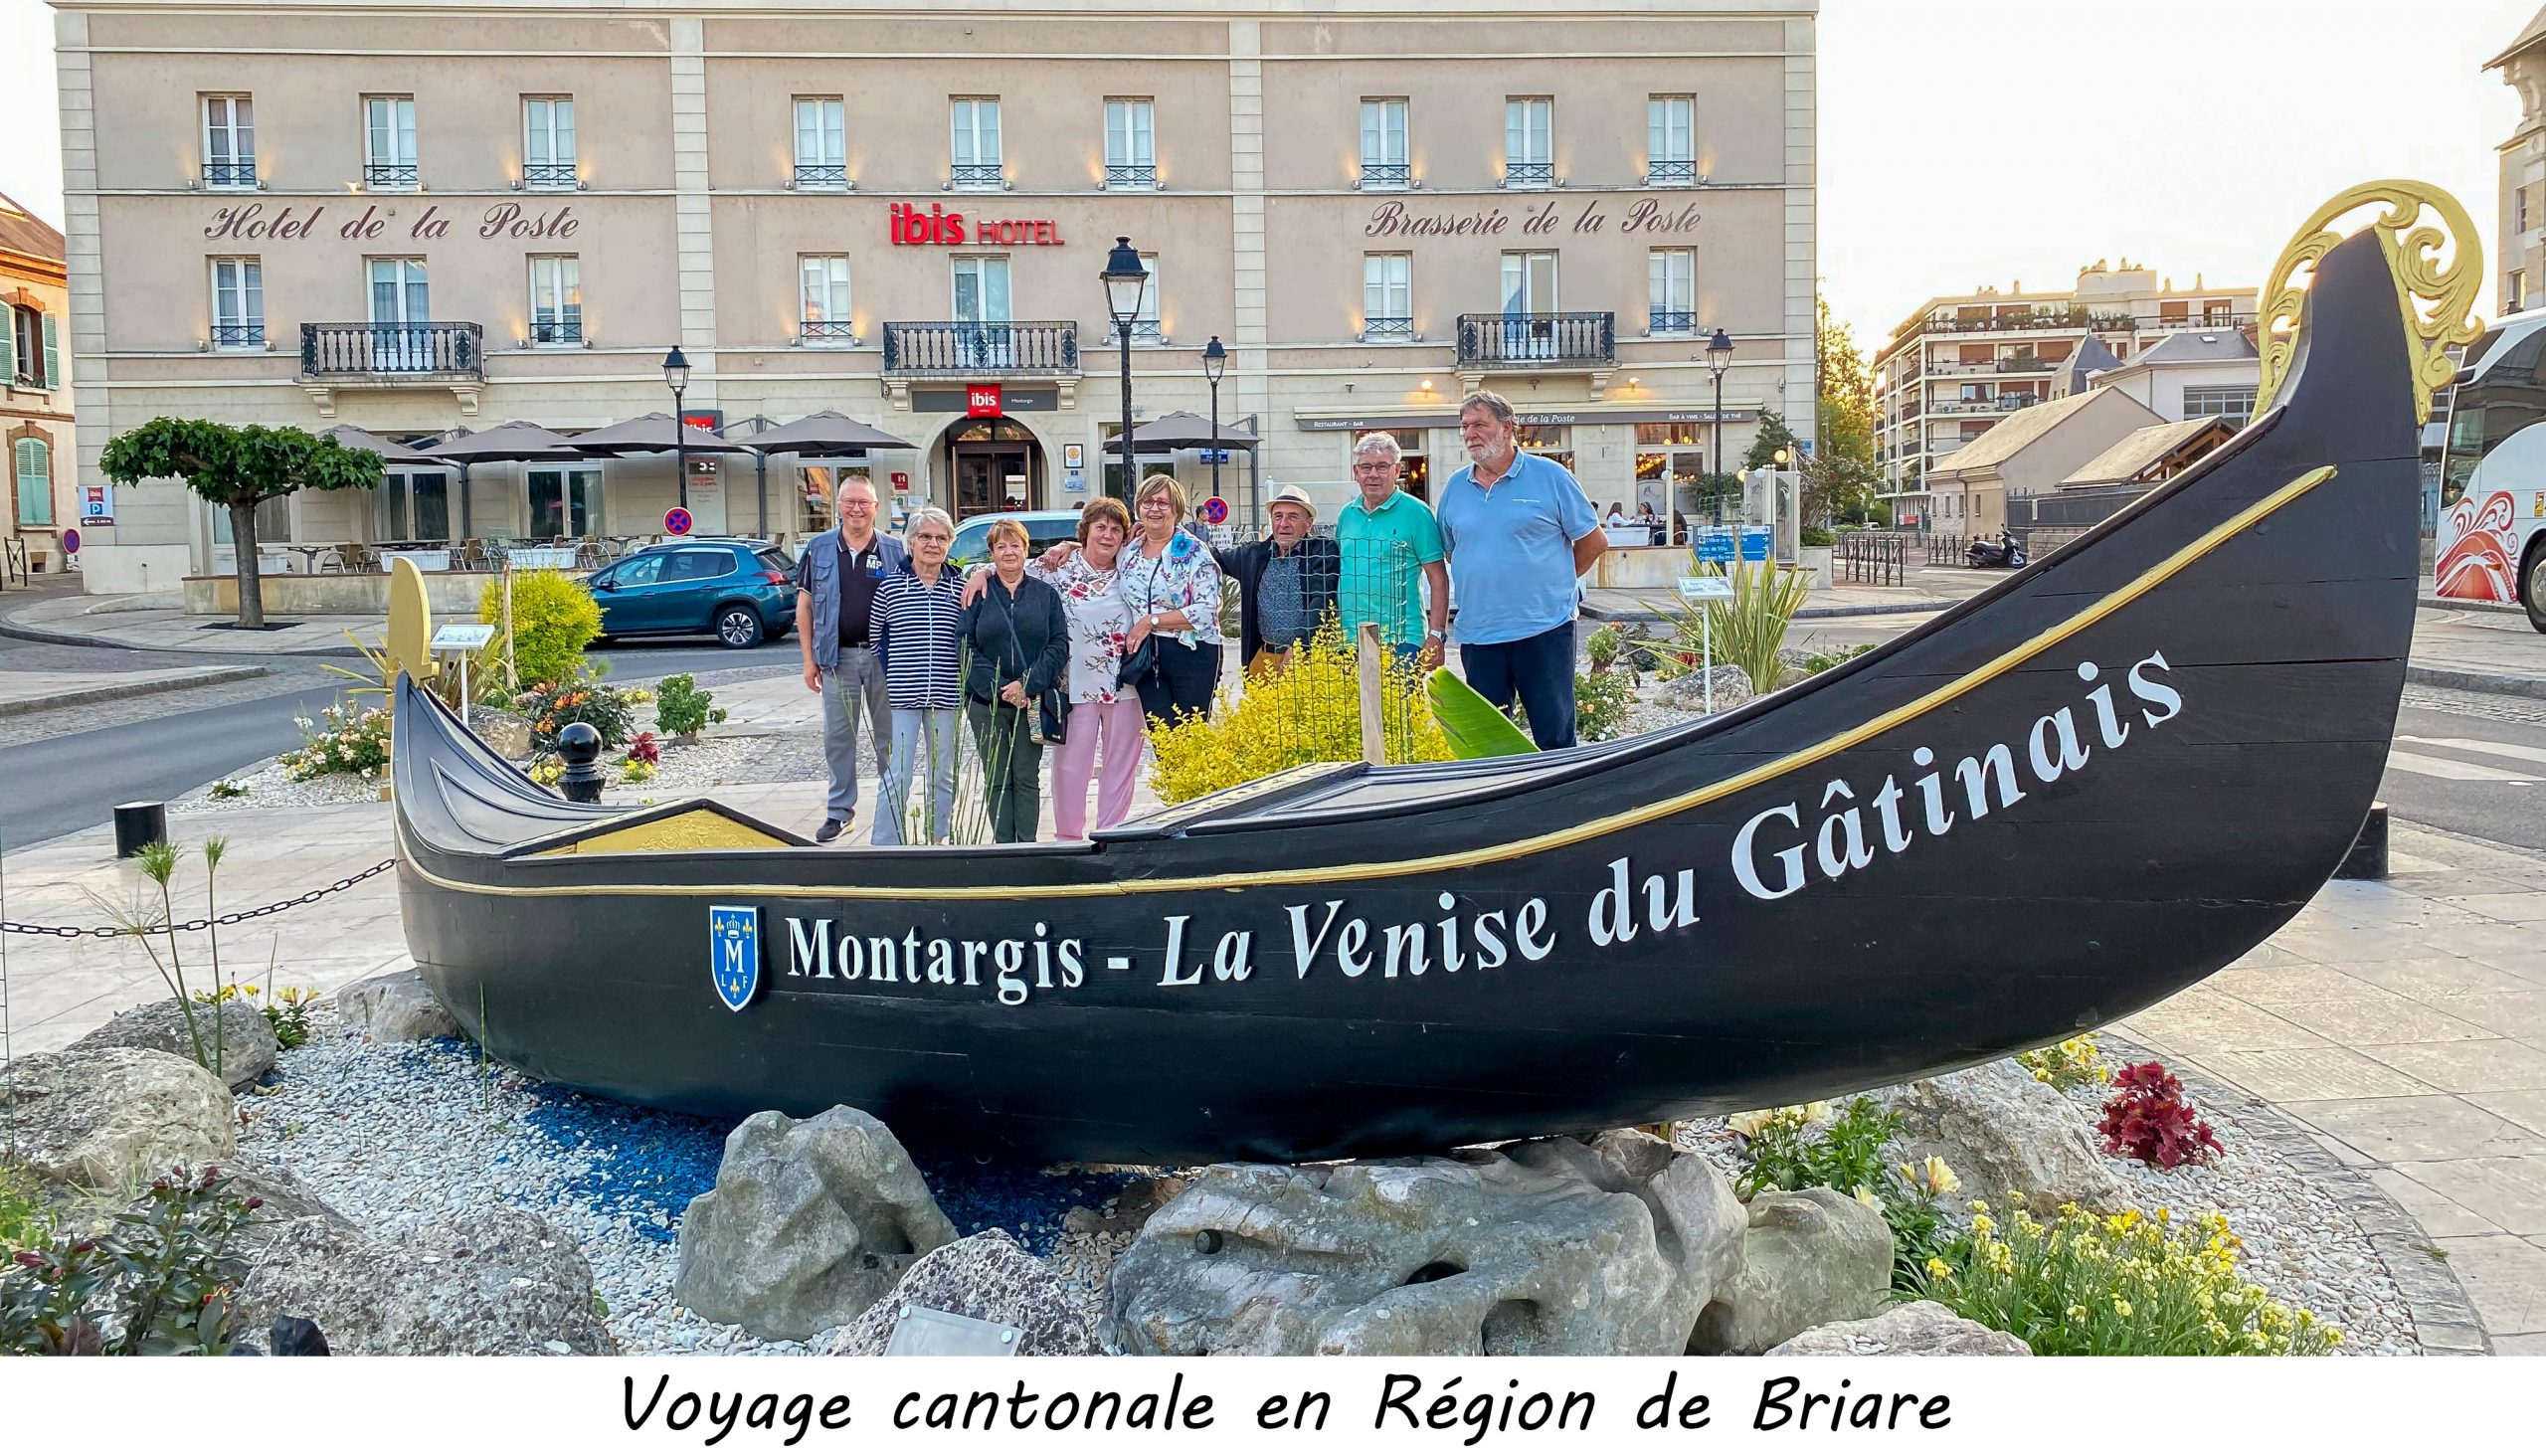 Voyage cantonale en Région de Briare